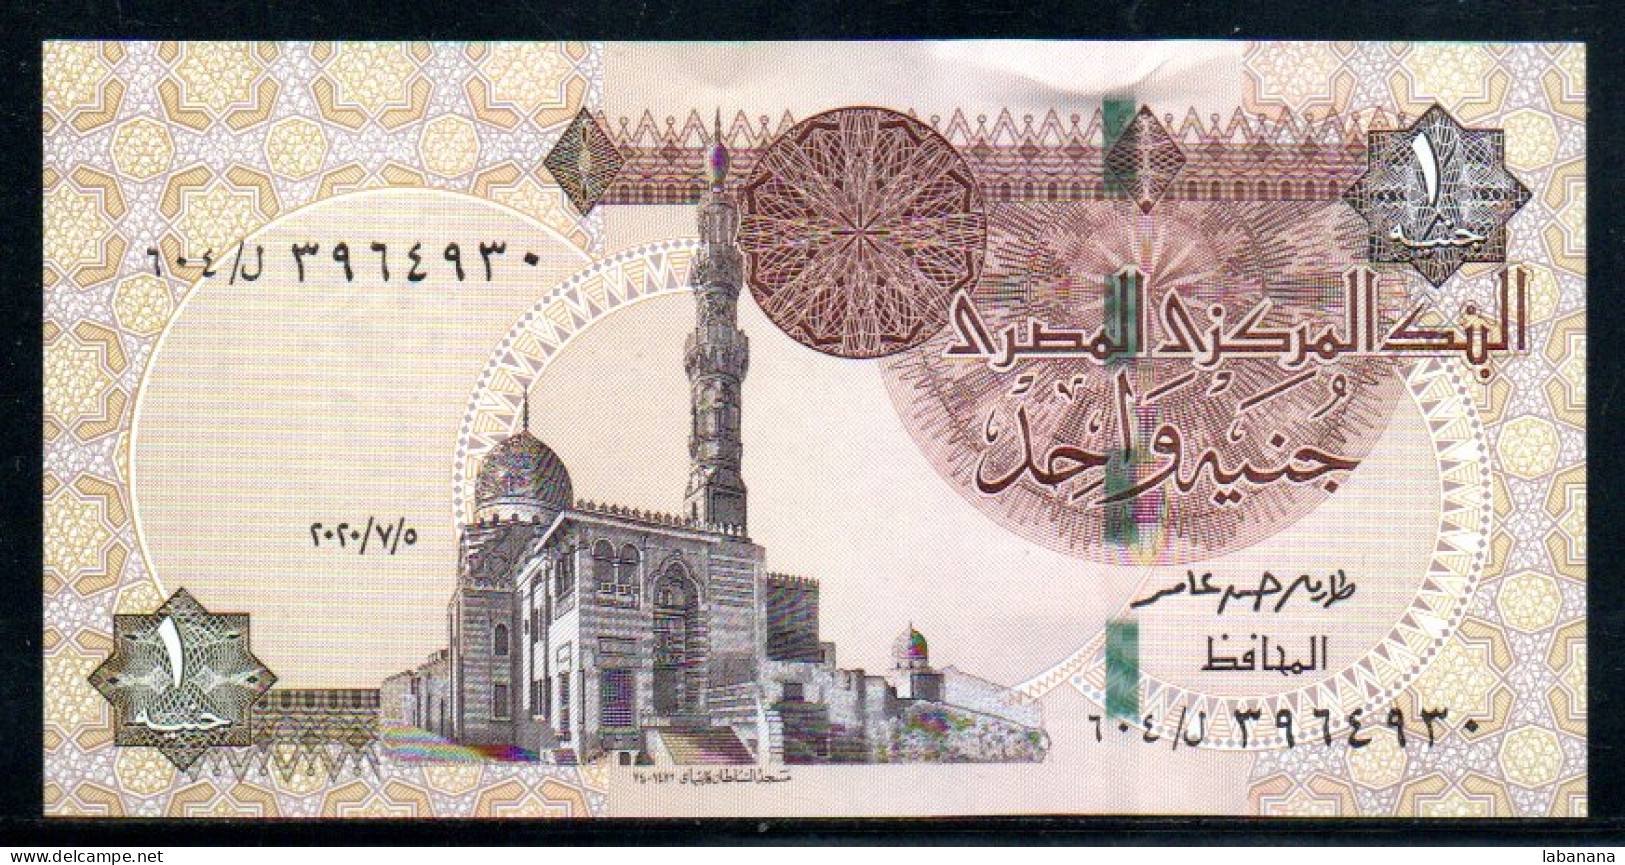 688-Egypte 1 Pound 2020 Neuf/unc - Egypt